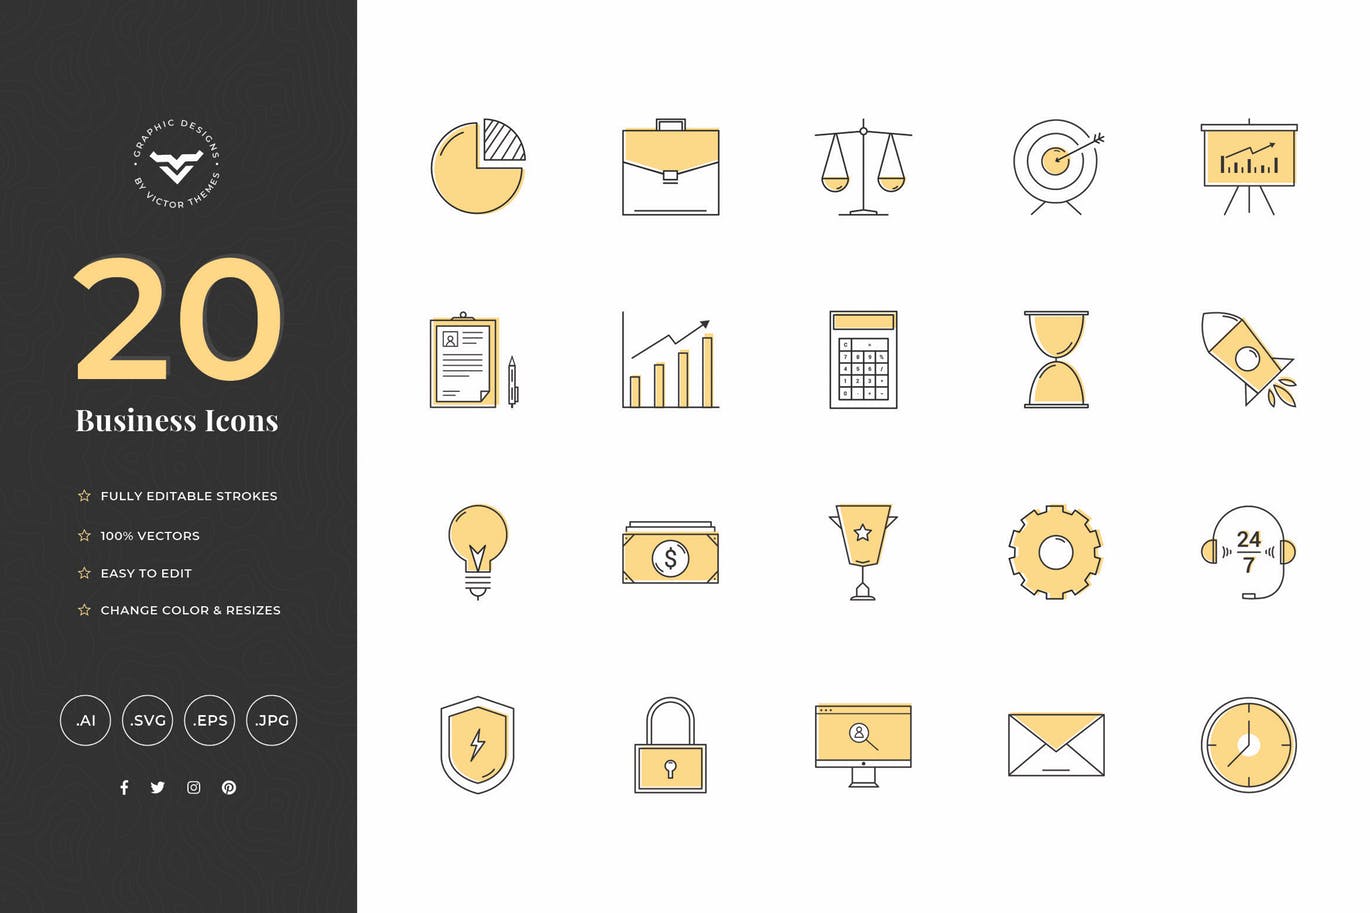 20款创意商业主题矢量蚂蚁素材精选图标素材 Creative Business Icons插图